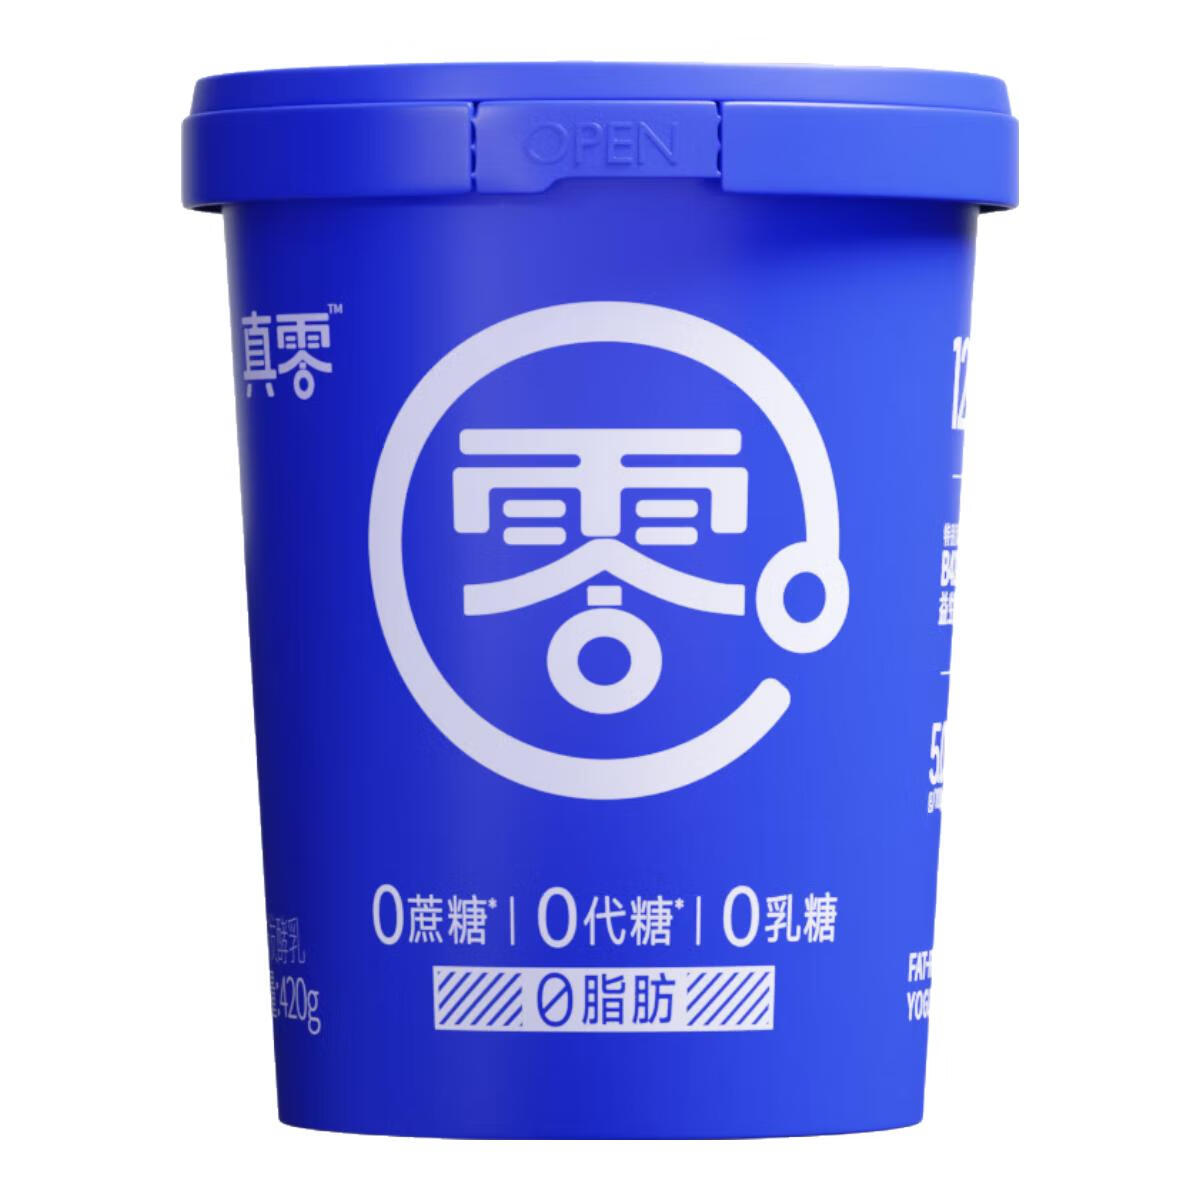 小蓝罐酸奶 420g*4罐